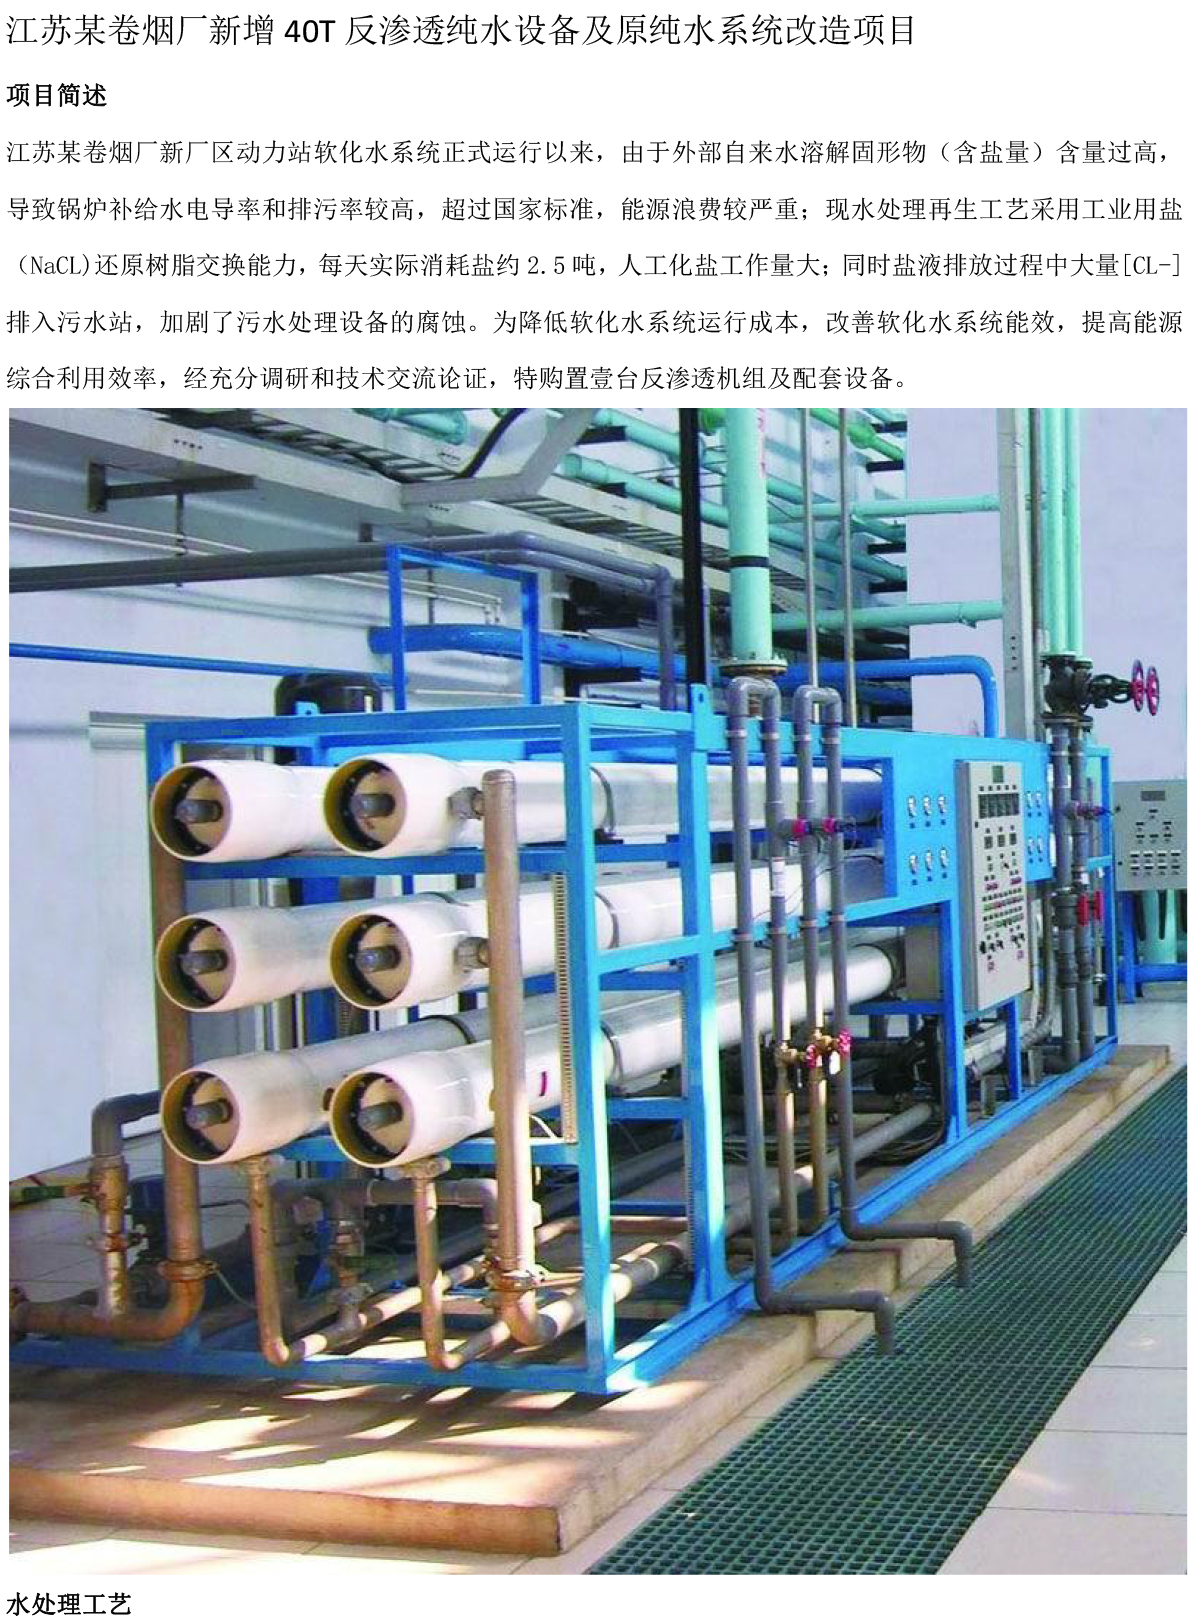 江苏某卷烟厂新增40T反渗透纯水设备及原纯水系统改造项目